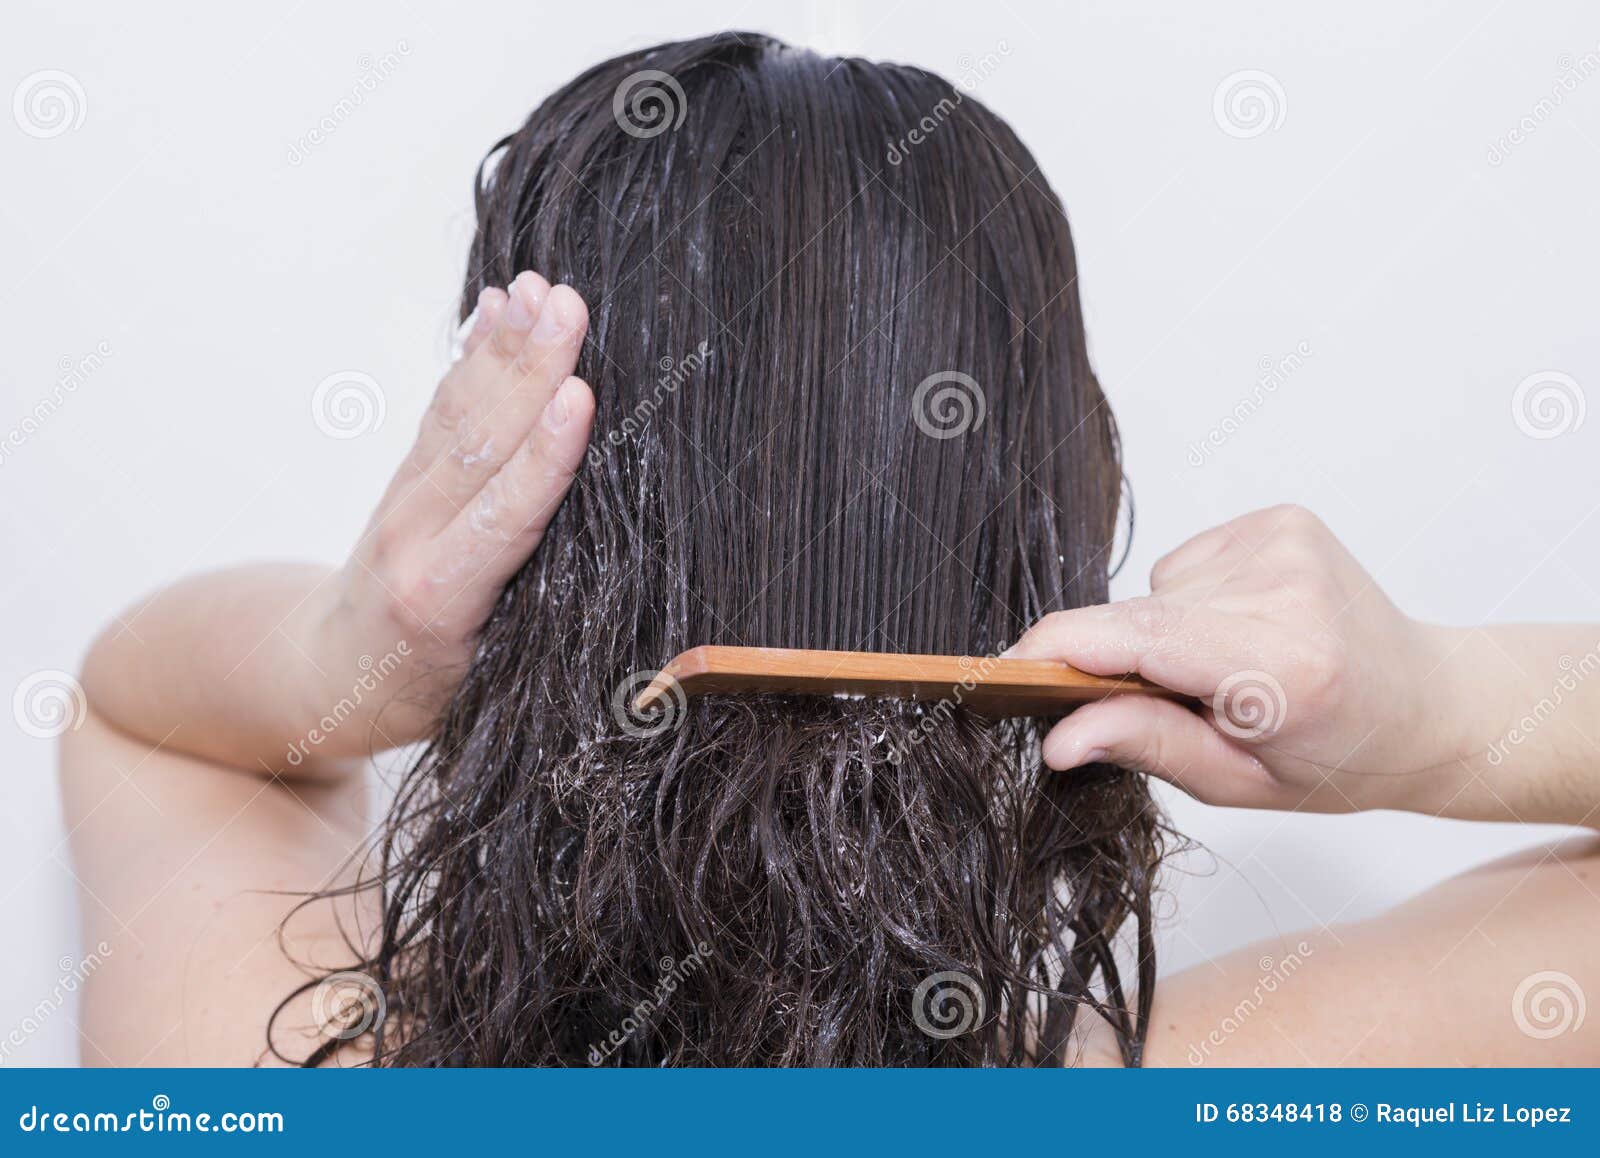 Нельзя спать с мокрой головой. Расчесывать волосы. Расчесывание мокрых волос. Расчесывает запутанные волосы. Волосы не расчесываются.